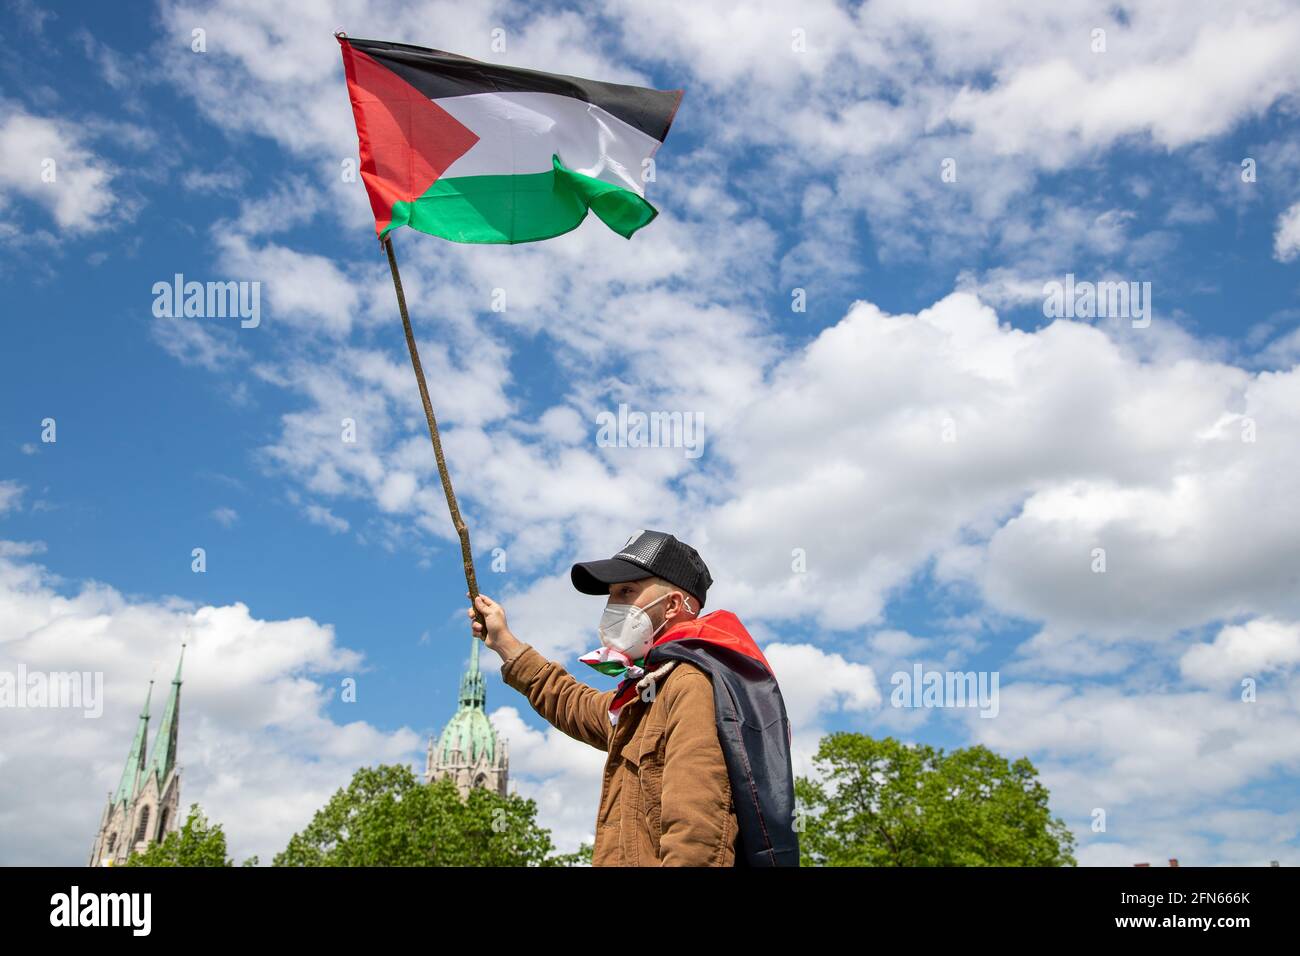 https://c8.alamy.com/comp/2FN666K/demonstrant-hlt-palstina-flagge-in-den-himmel-ca-1000-menschen-versammelten-sich-am-14-mai-in-mnchen-um-ihre-solidaritt-mit-den-palstinenserinnen-und-den-menschen-in-gaza-zu-zeigen-protestor-holds-palestine-flag-in-the-sky-around-1000-people-spontaneosly-gathered-on-may-14-2021-in-munich-germany-to-show-their-solidarity-with-the-palestinian-people-and-the-people-in-gaza-photo-by-alexander-pohlsipa-usa-2FN666K.jpg